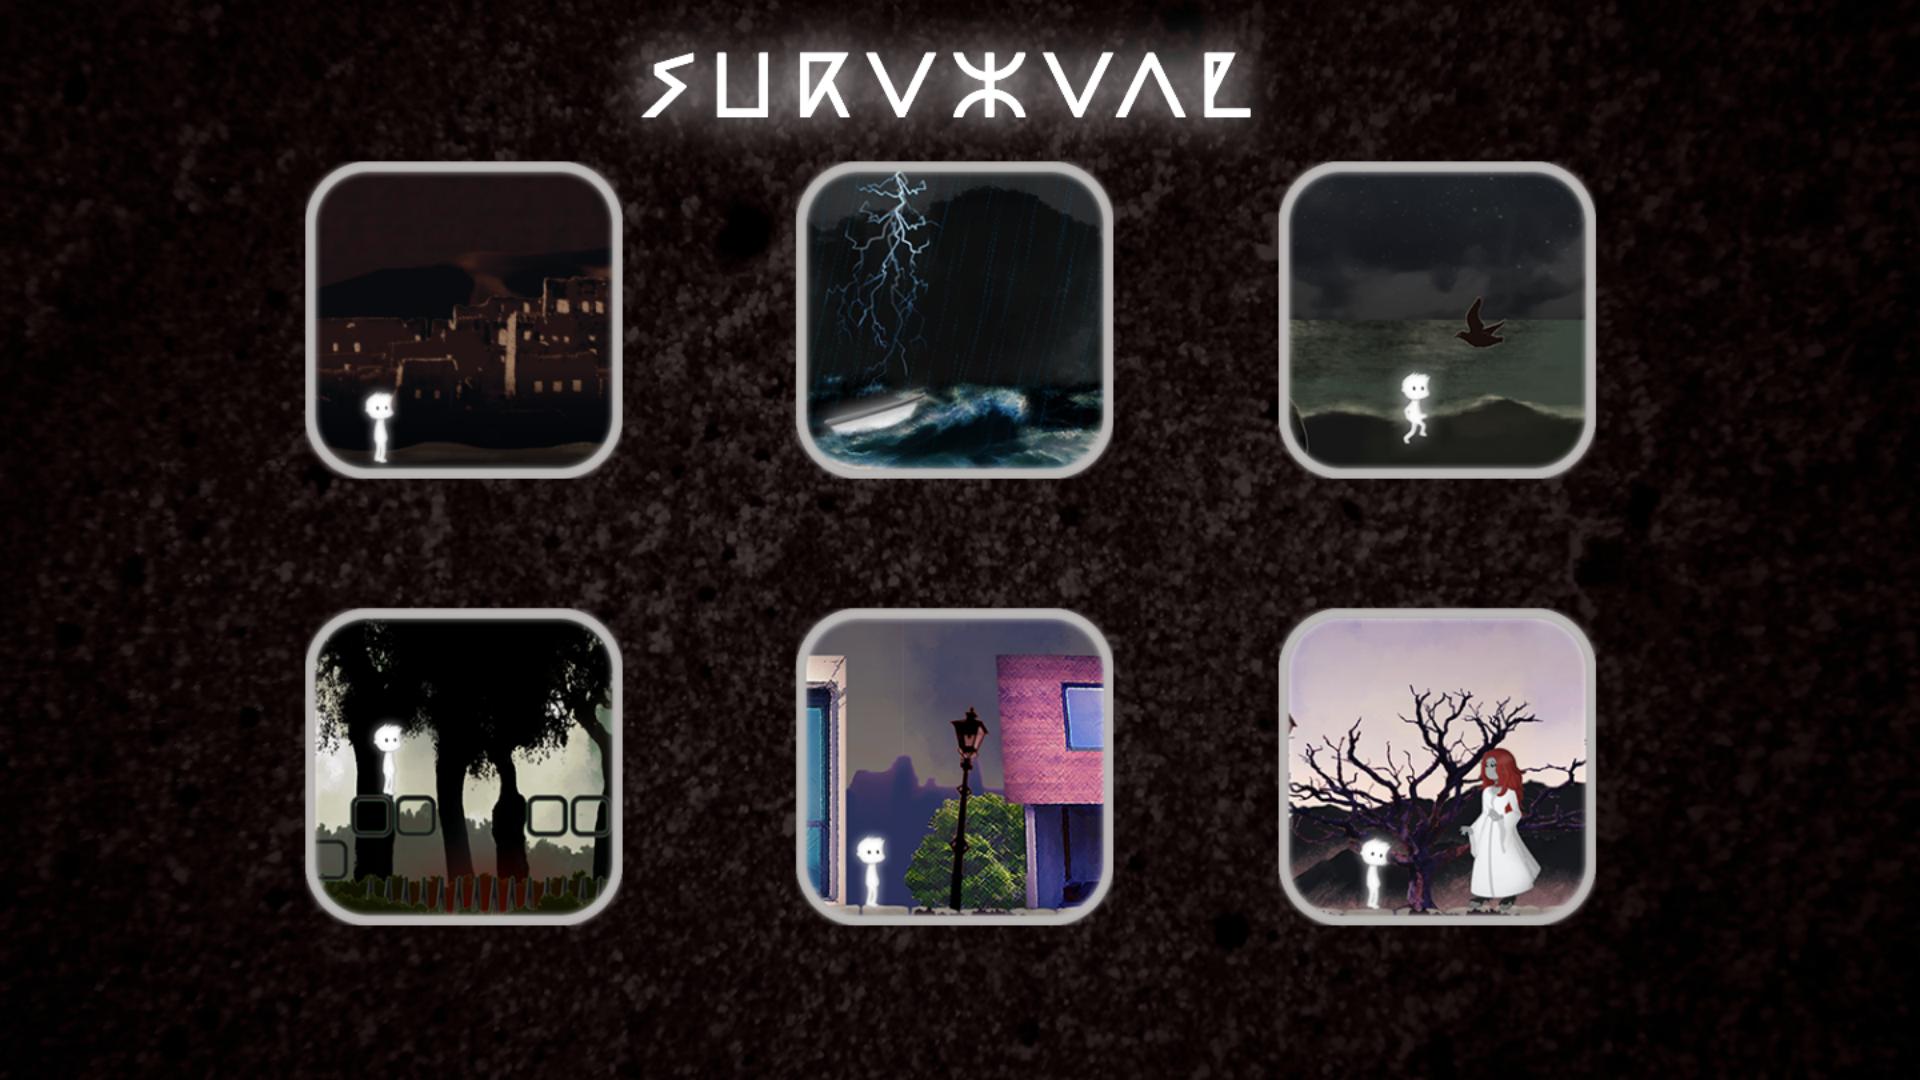 Game e made. Игра IOS of Survival. Экран загрузки Survival. App Survival. Survival game e-made+.